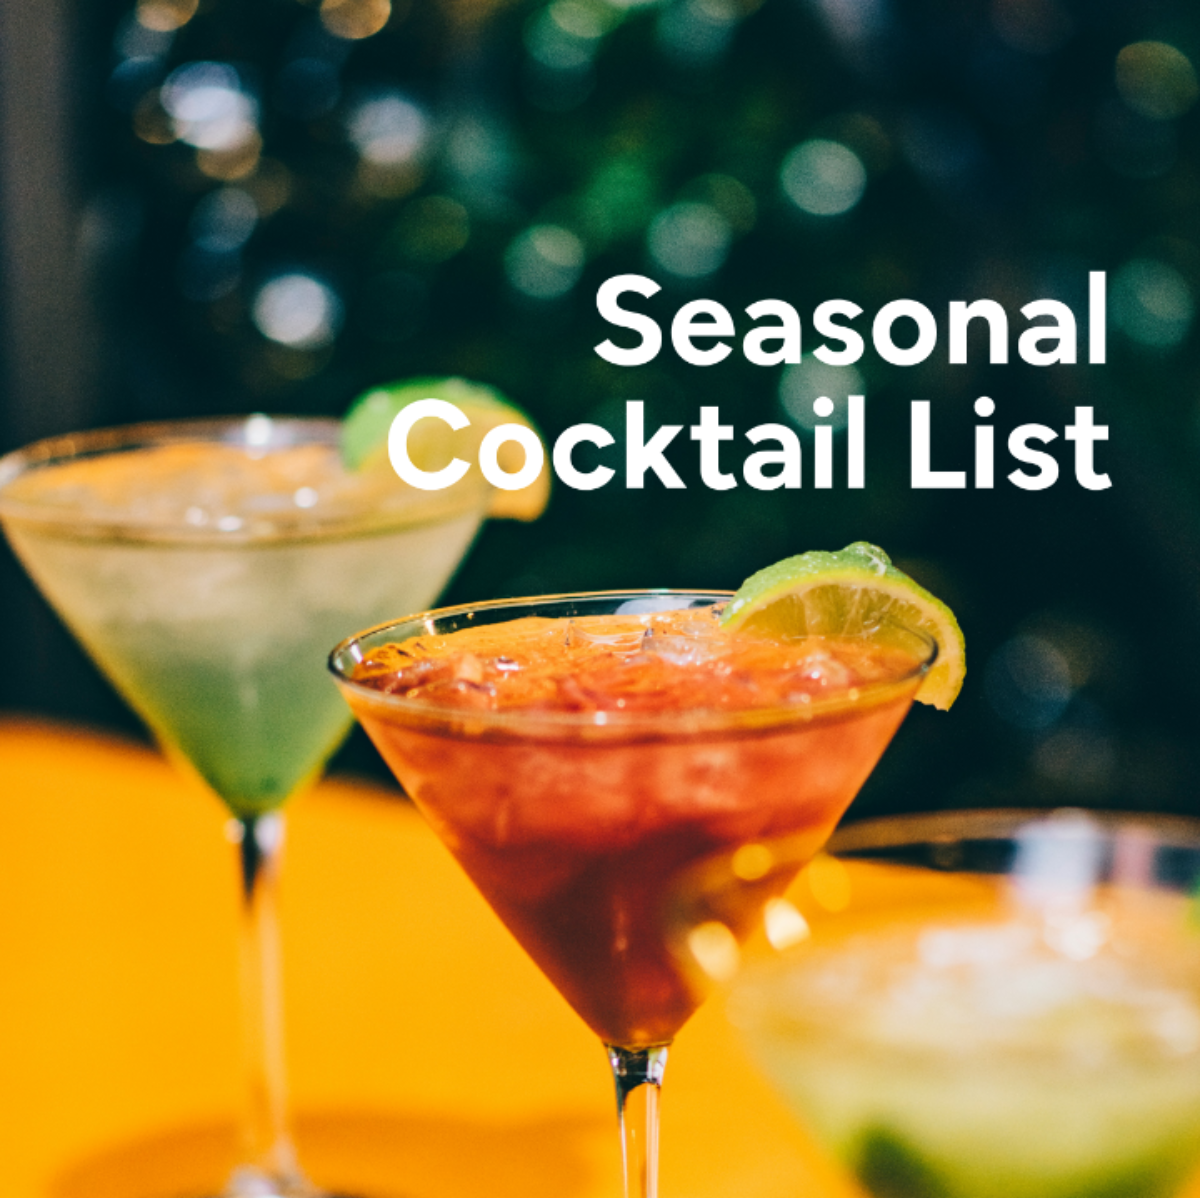 Seasonal Cocktail List Template